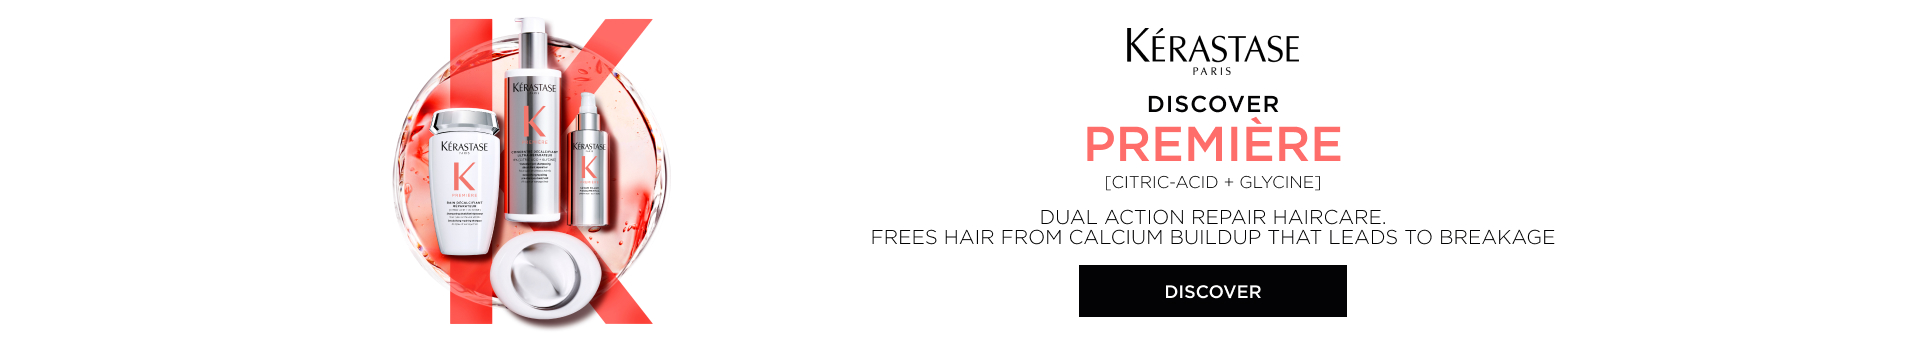 Premiere Homepage Banner | L'Oréal Partner Shop